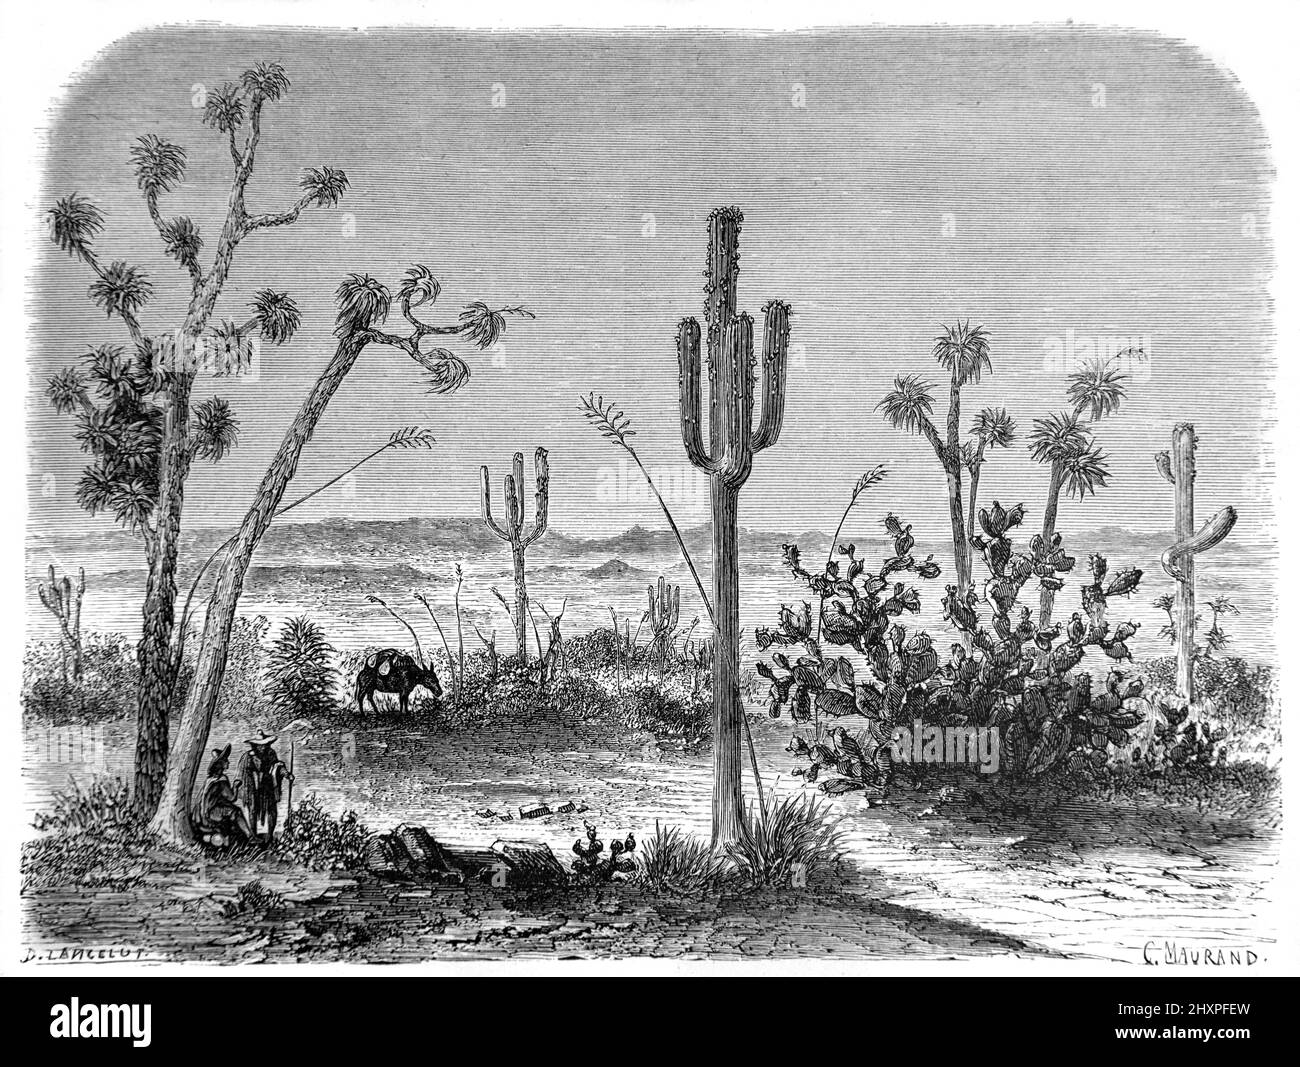 Saguaro, Carnegiea gigantea, alias Cereus giganteus, Giant Cereus Cacti ou Ceroid Cactus dans son habitat naturel du désert de Sonoran Arizona États-Unis, États-Unis ou États-Unis d'Amérique. Illustration ancienne ou gravure 1860. Banque D'Images